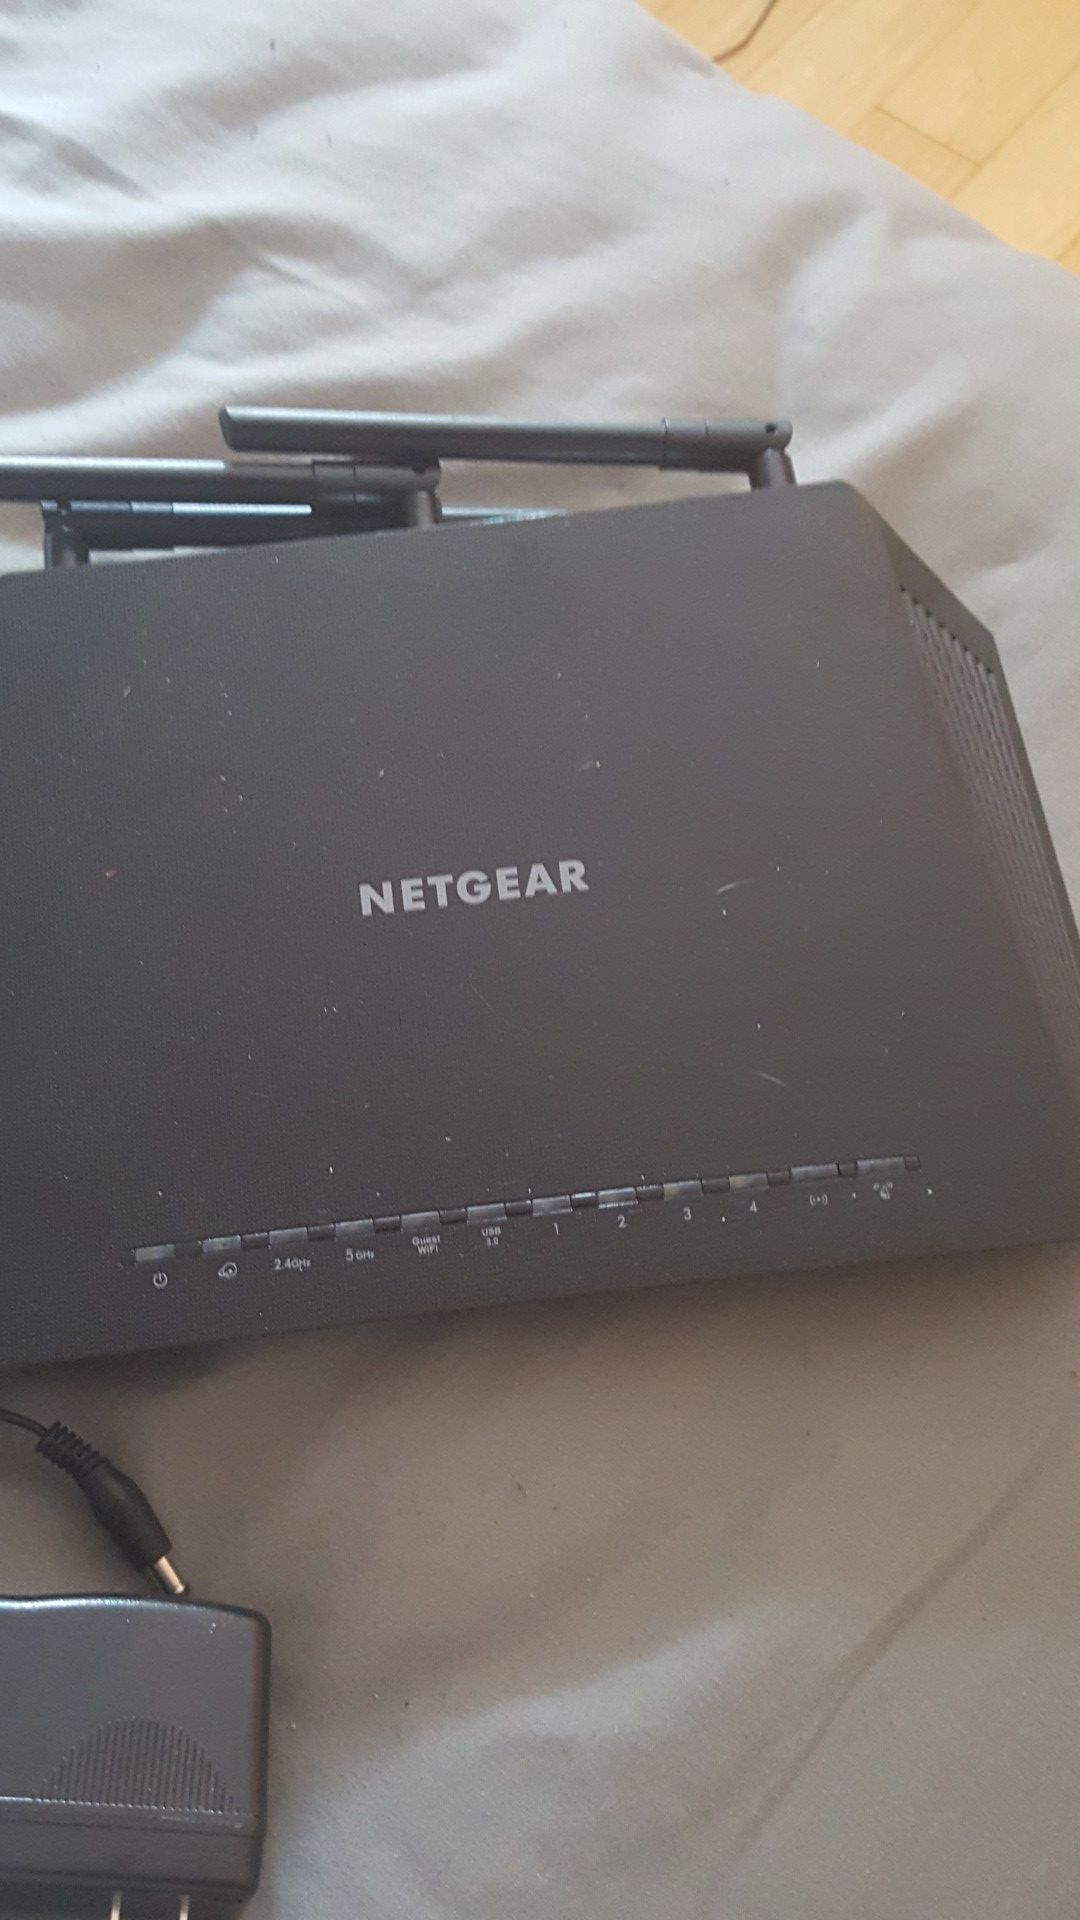 Netgear B6700 Wireless router